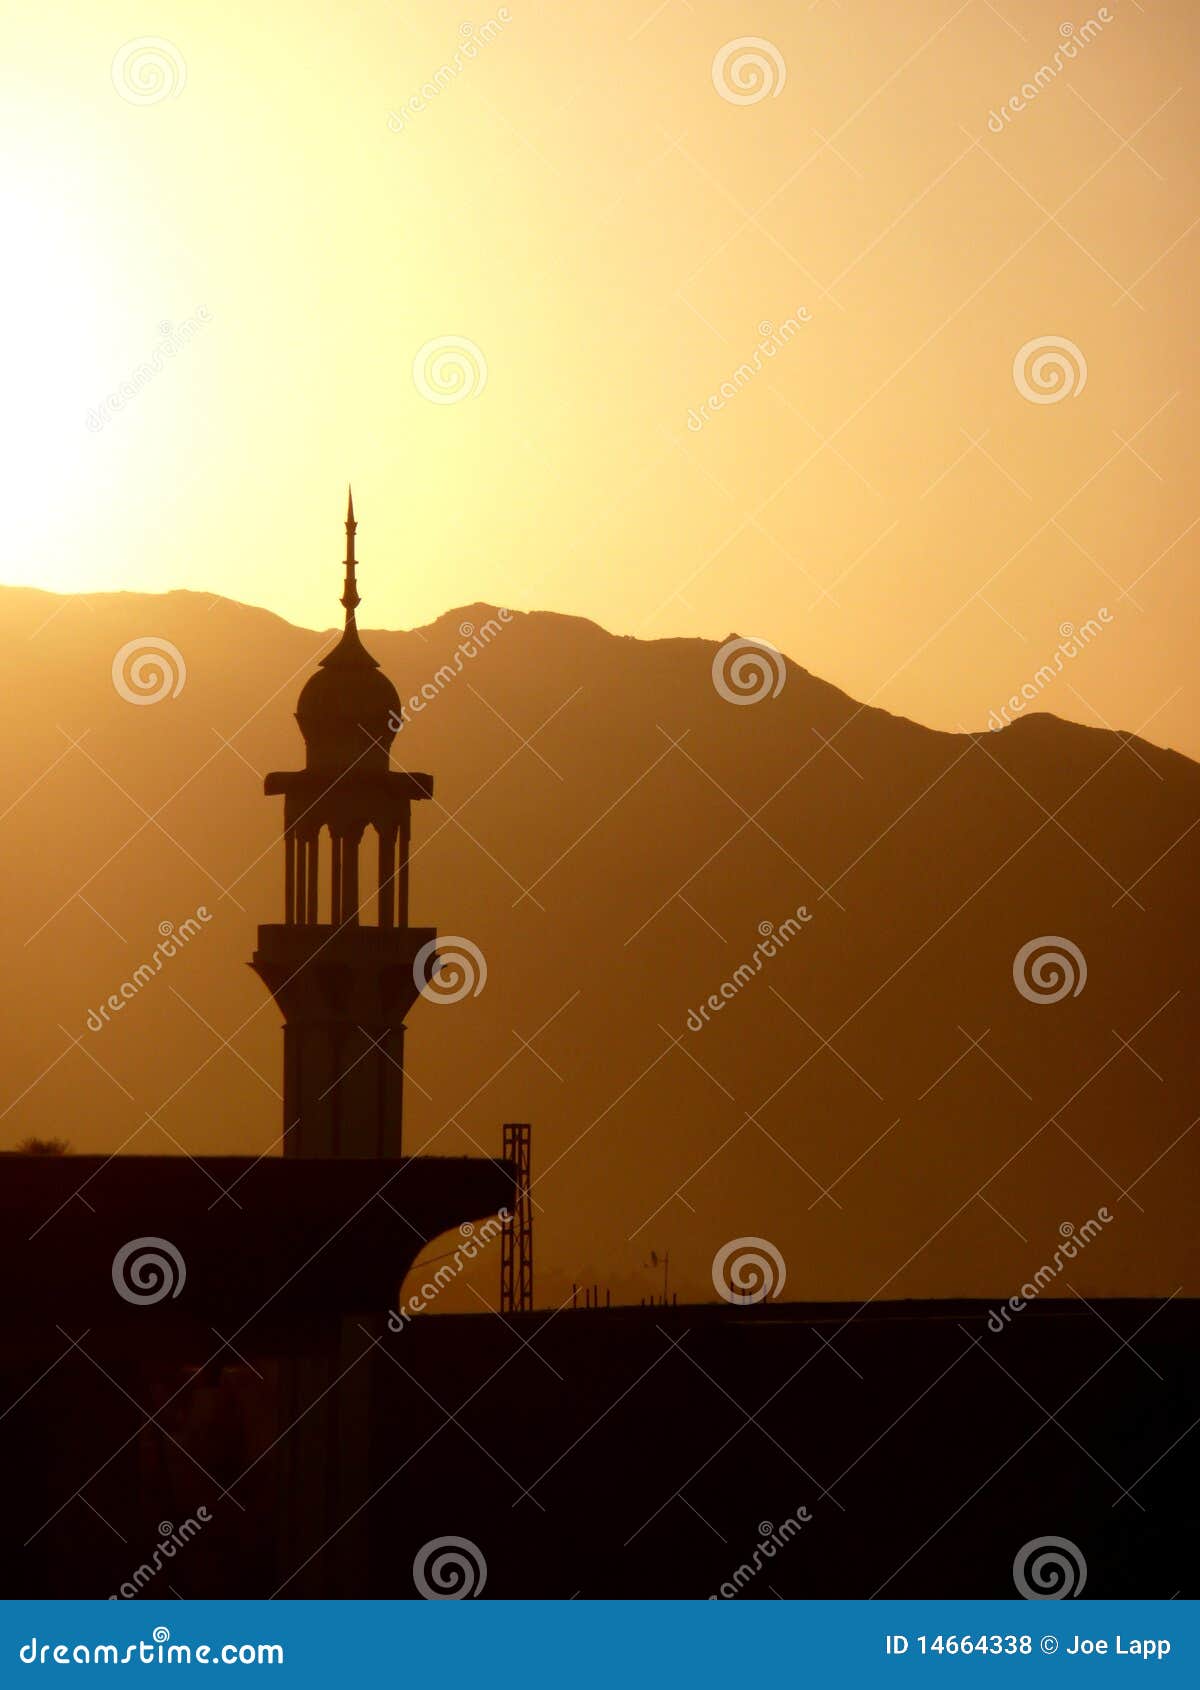 pakistan sunset minaret